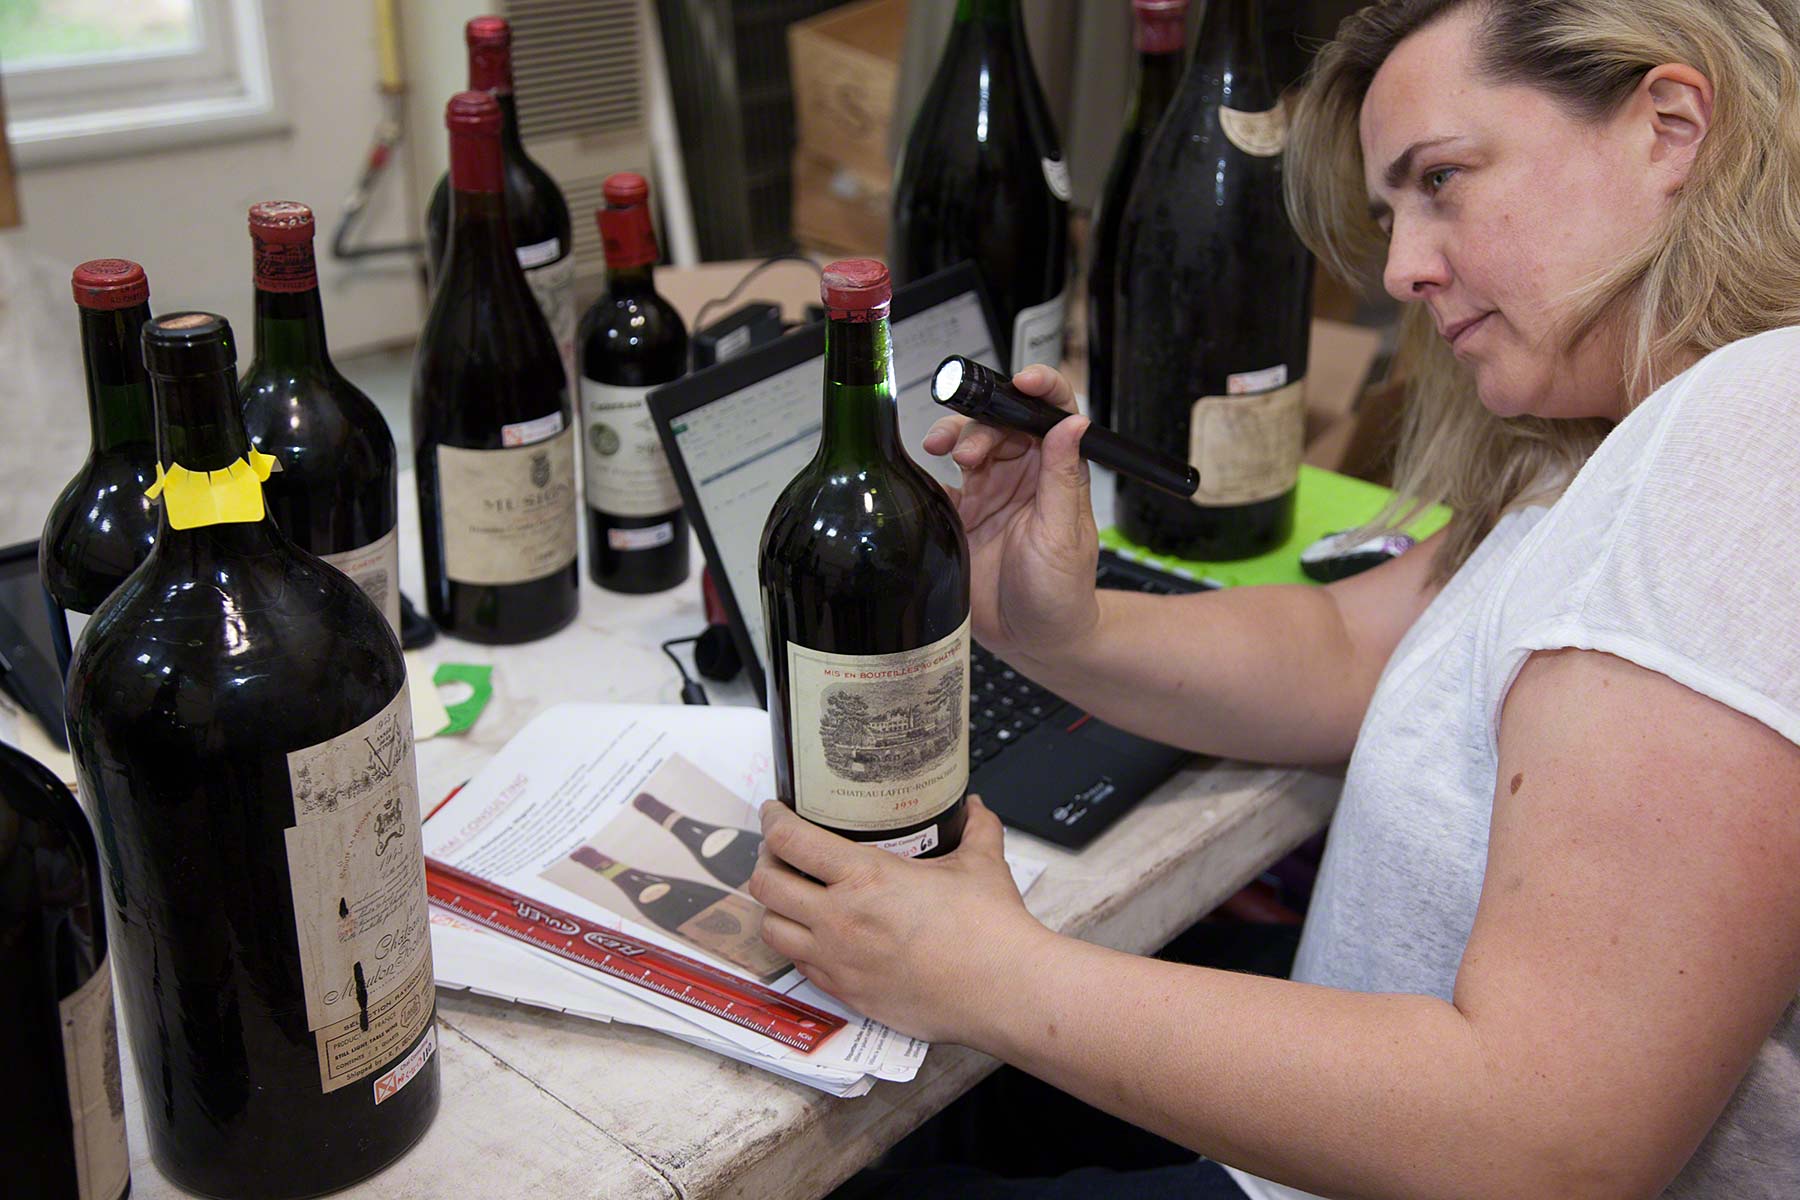 La Purisima Monastrell 2015 entre los mejores vinos del invierno para la cadena Oddbins